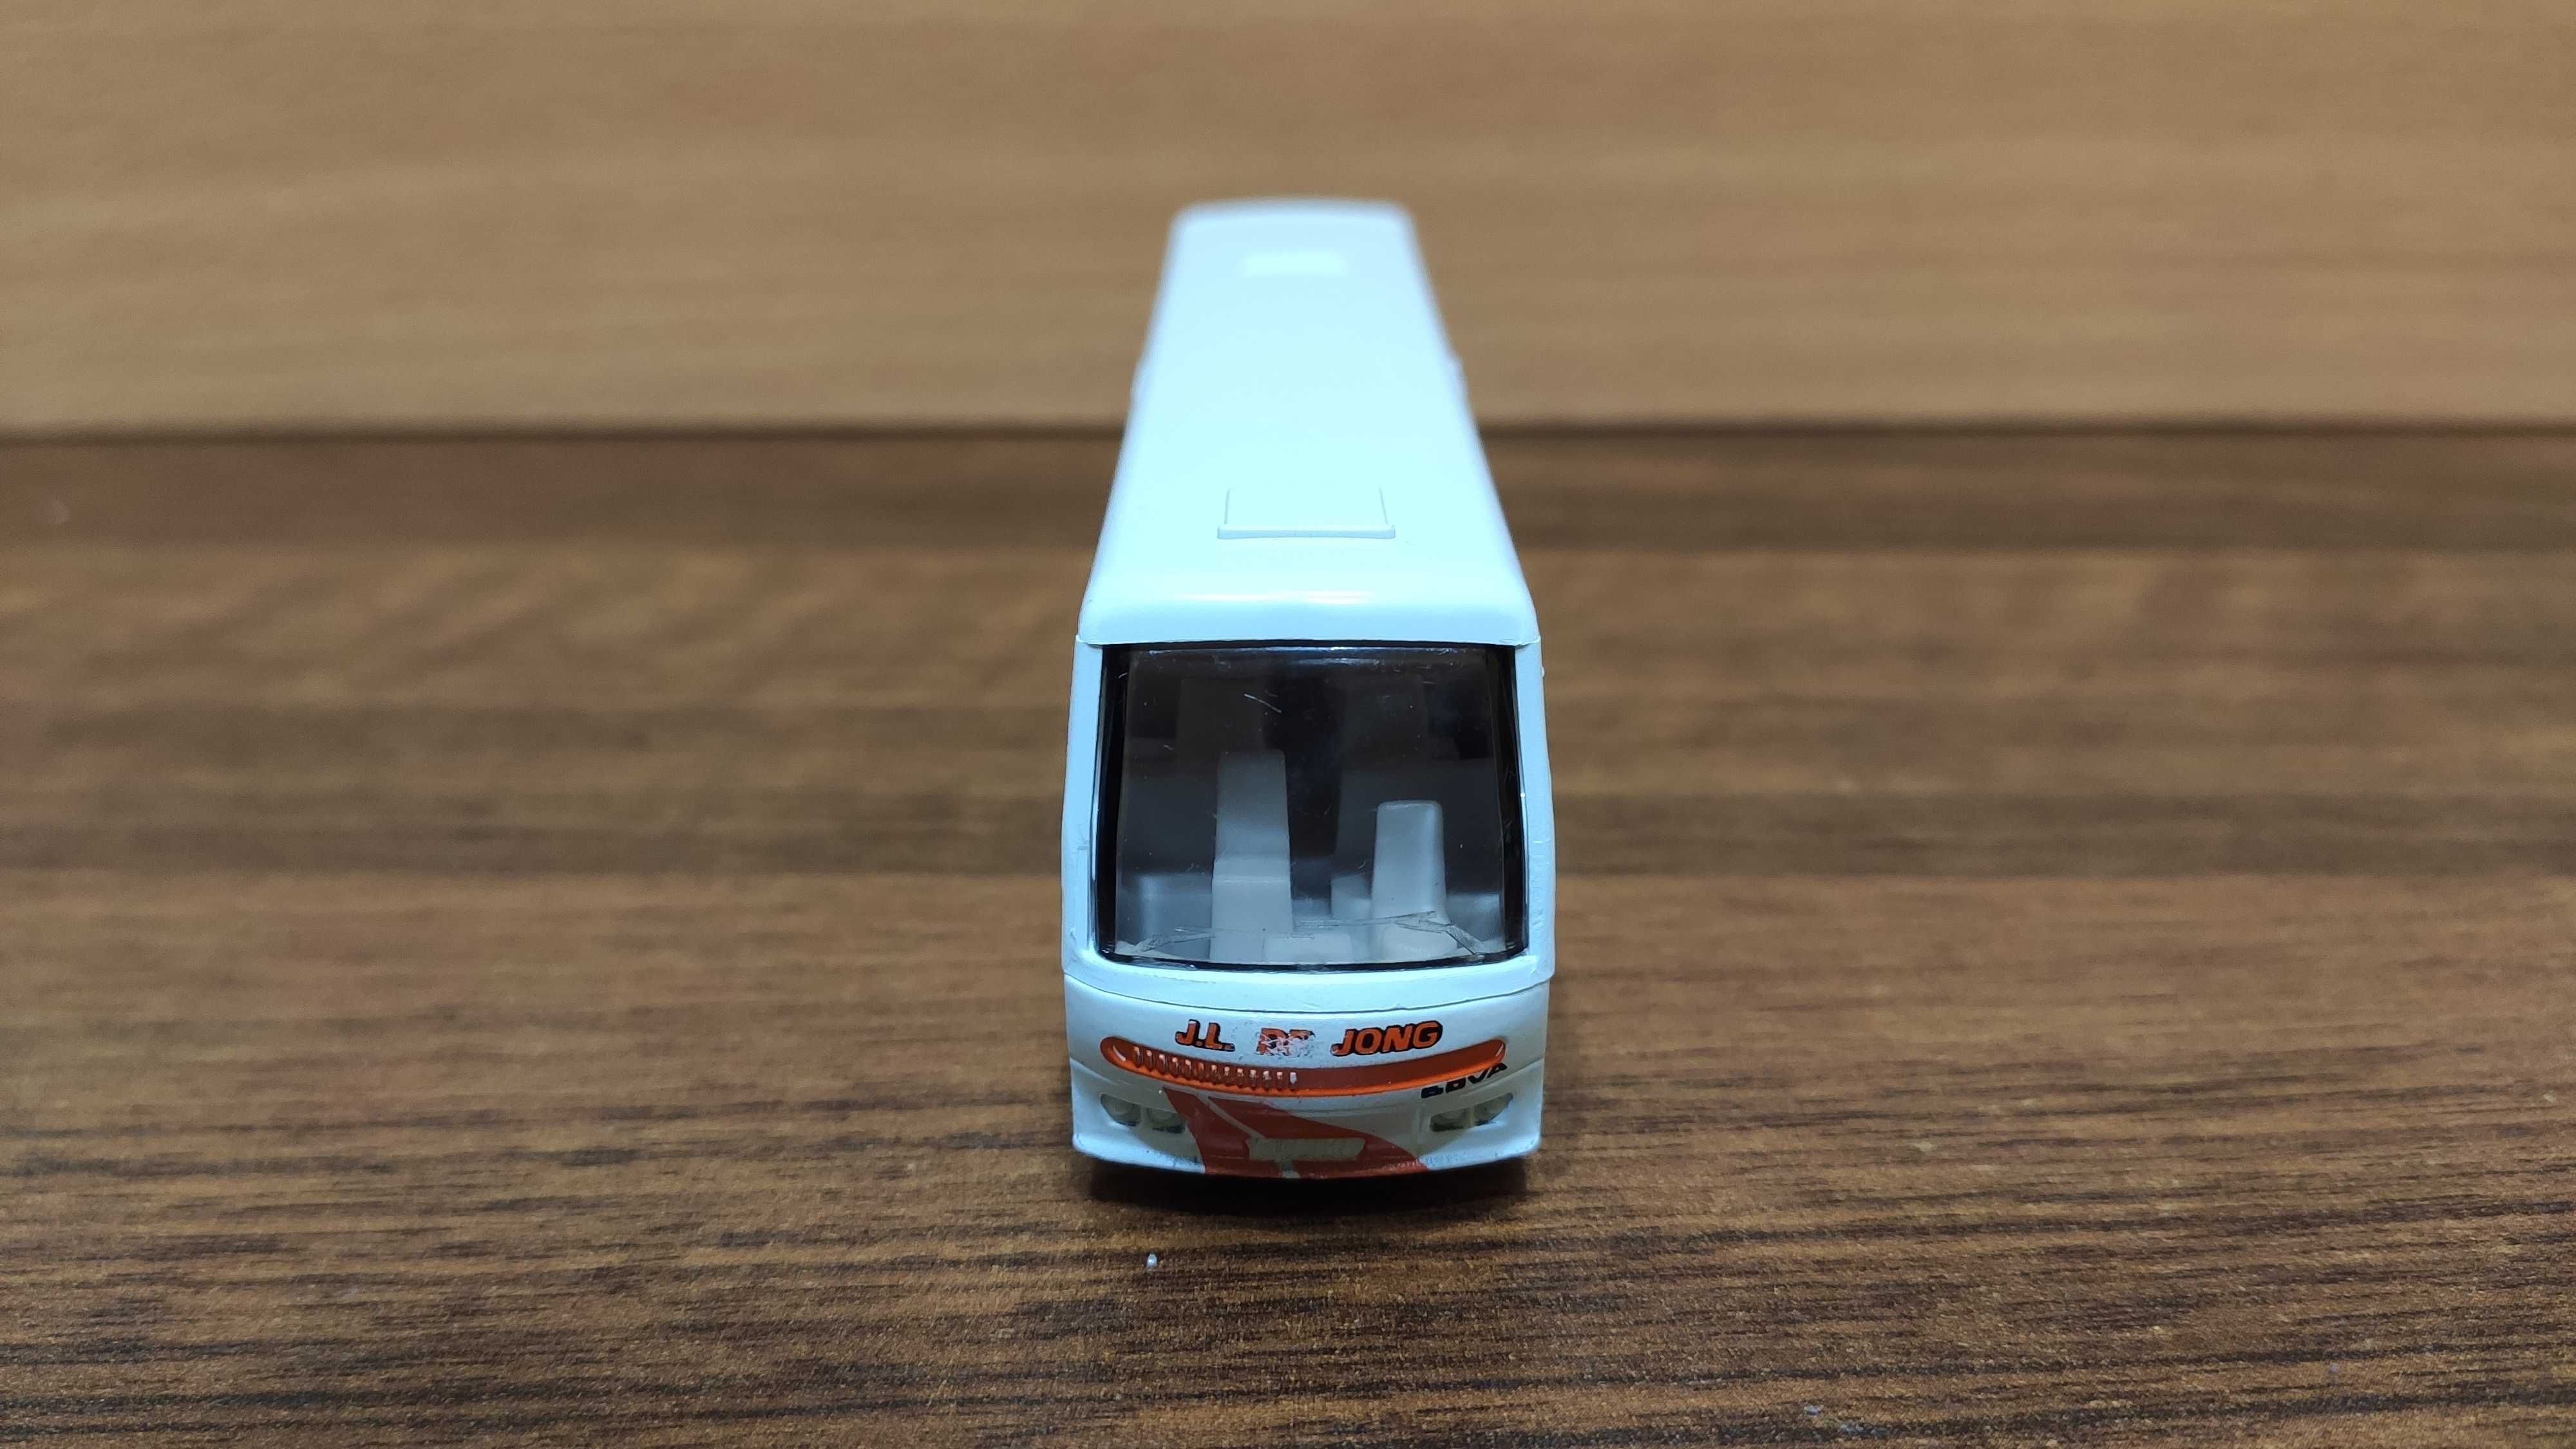 Model autobusu: BOVA Futura - J.L. De Jong [EFSI Holland]